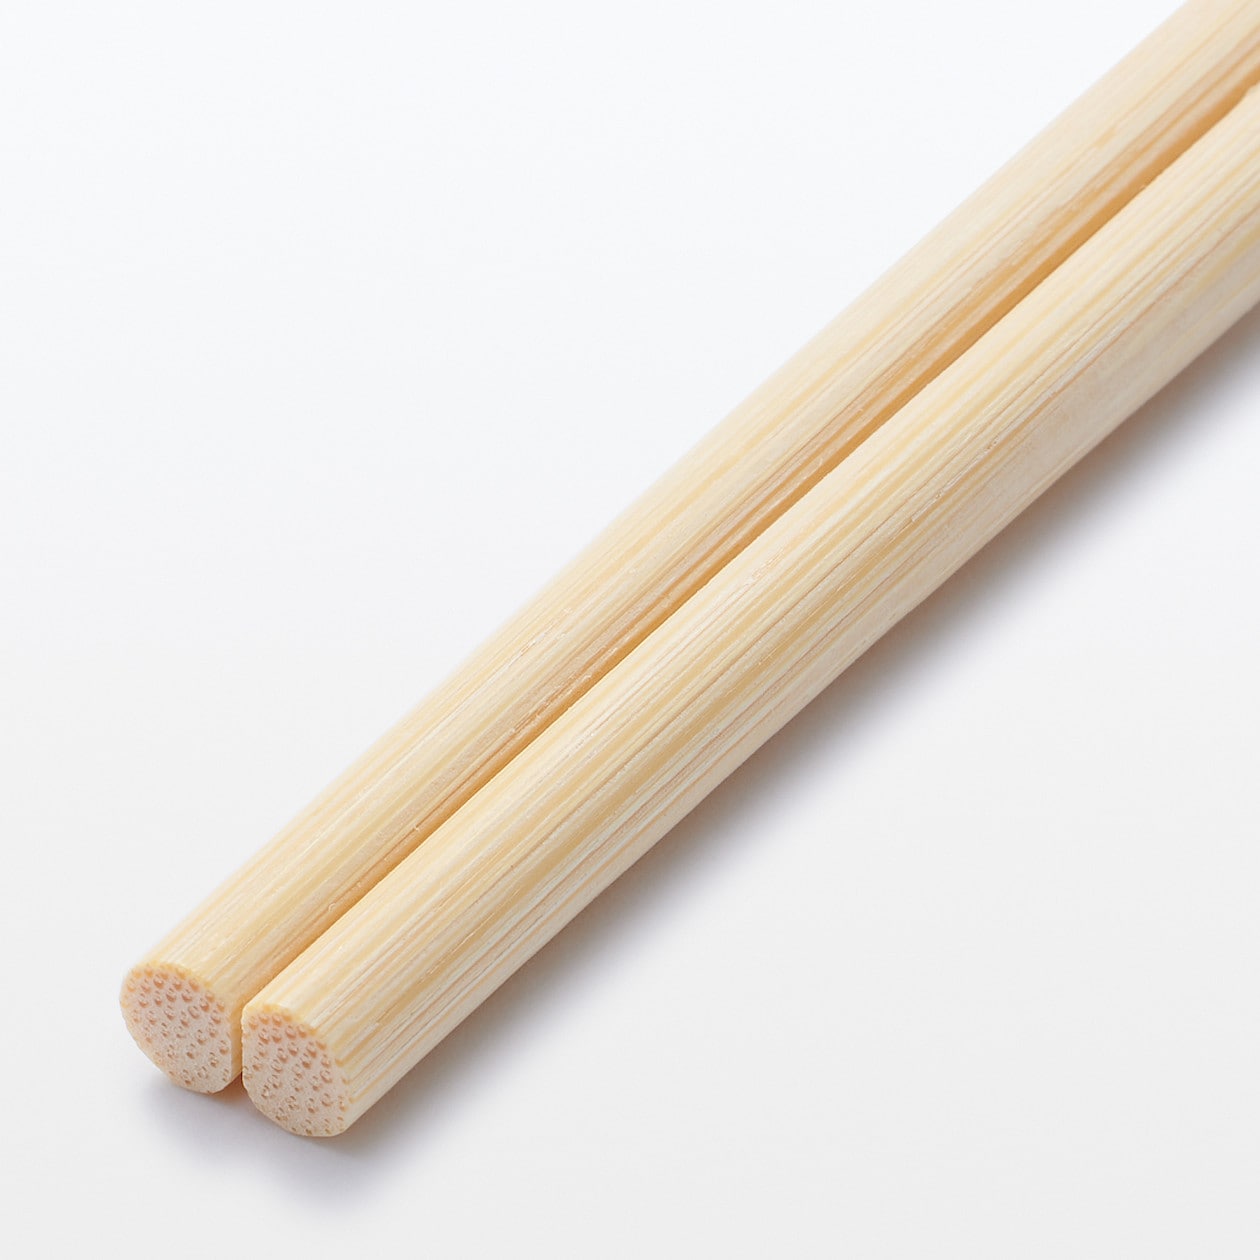 竹割り箸